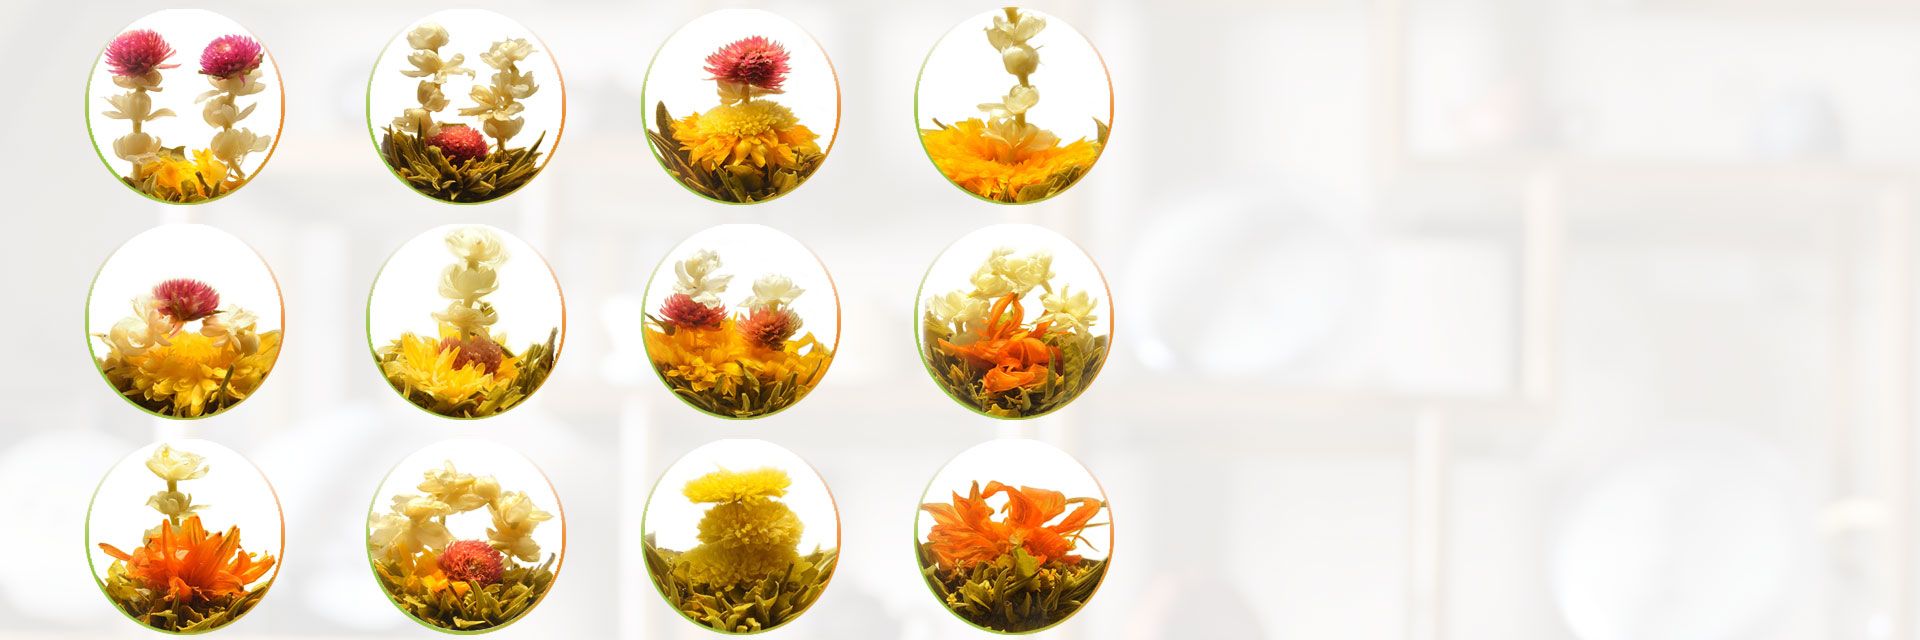 ThéCalin 12 fleurs de thé Chine, tisane infusion : fleur comestible